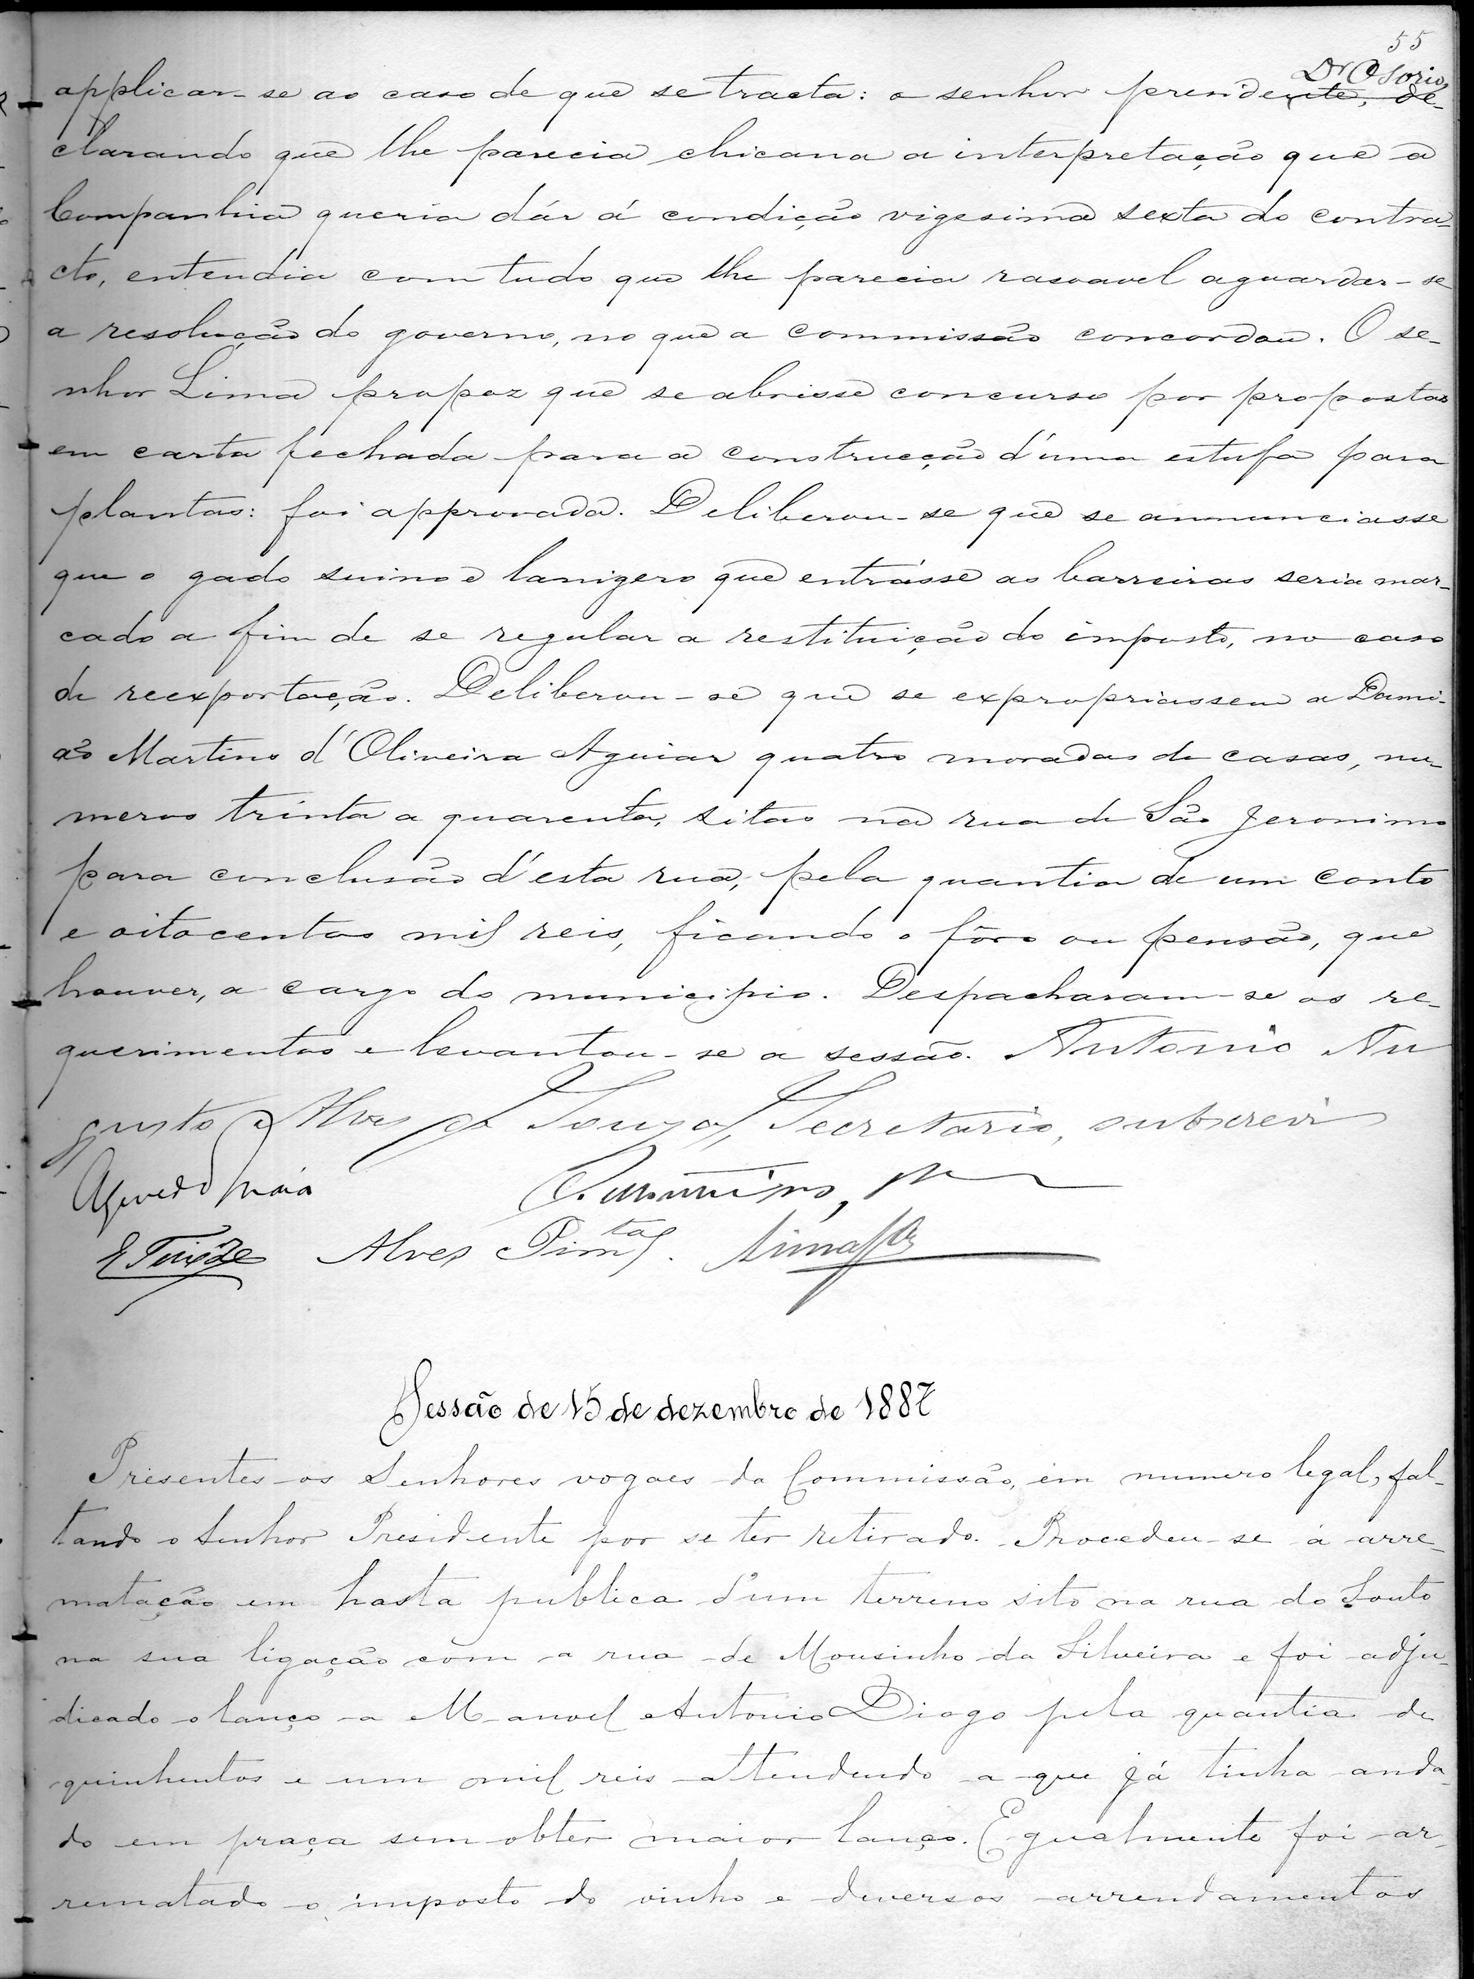 Acta da Comissão Executiva: 1887-12-10